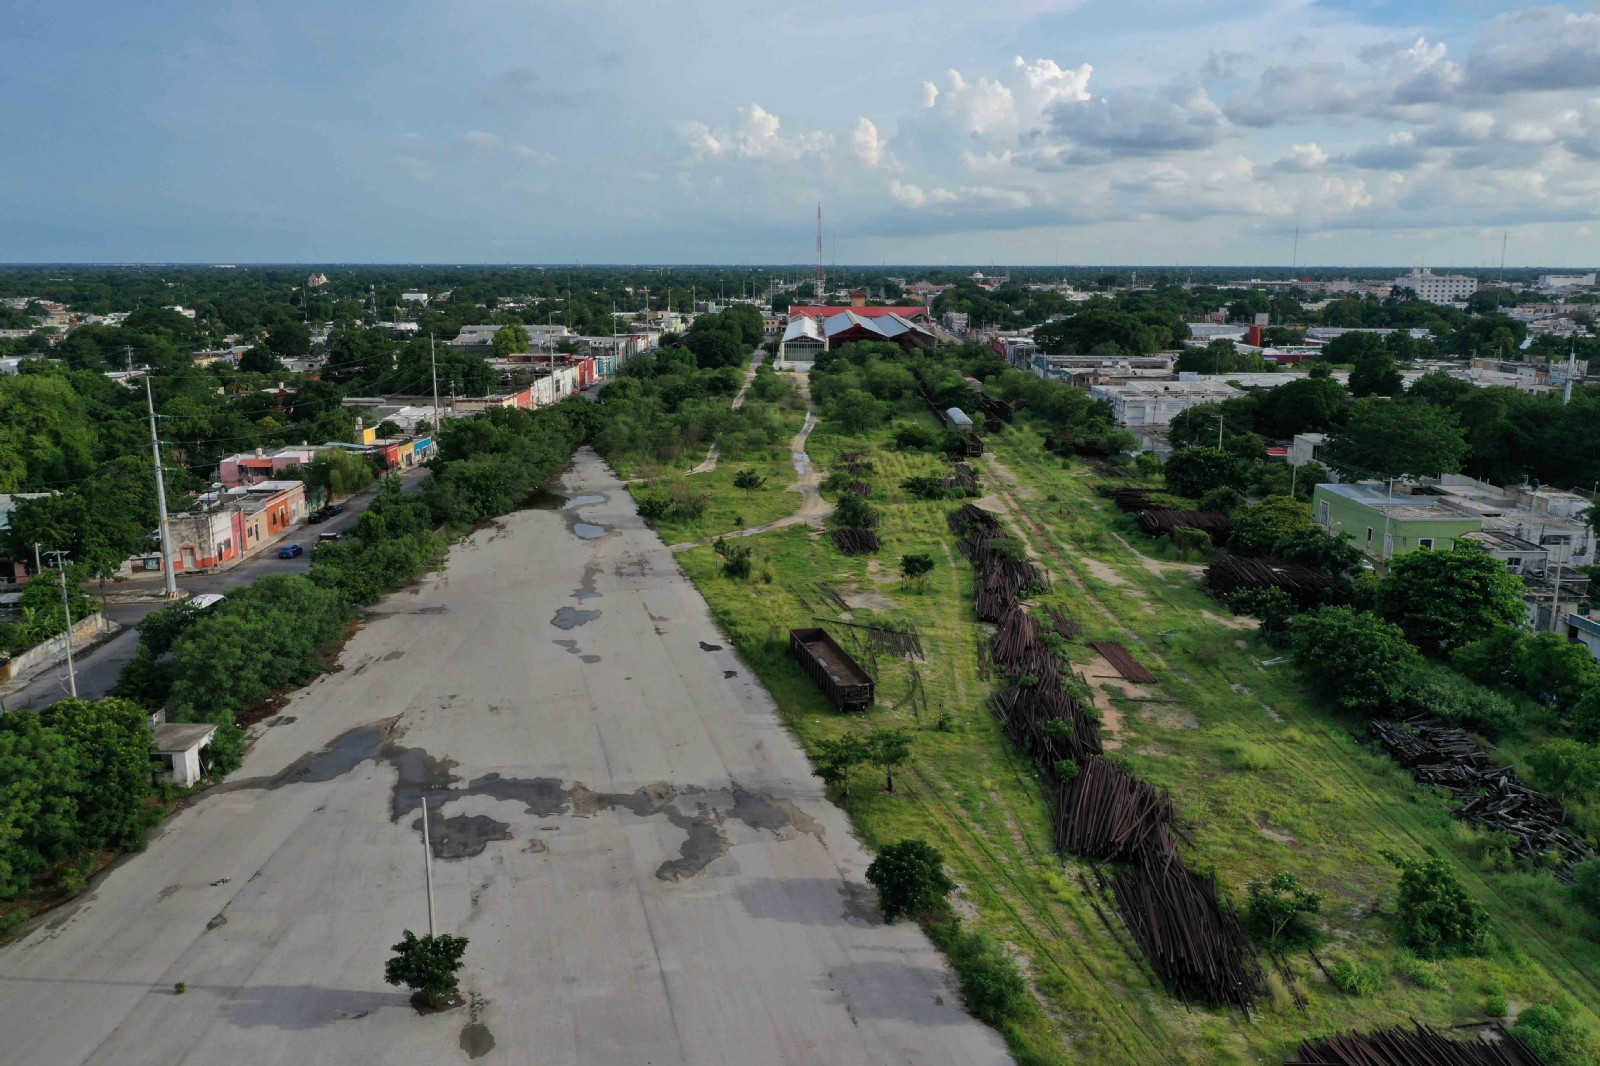 Los terrenos de La Plancha estaba proyectado para albergar al proyecto del Tren Maya, incluso se proyectó un paso elevado